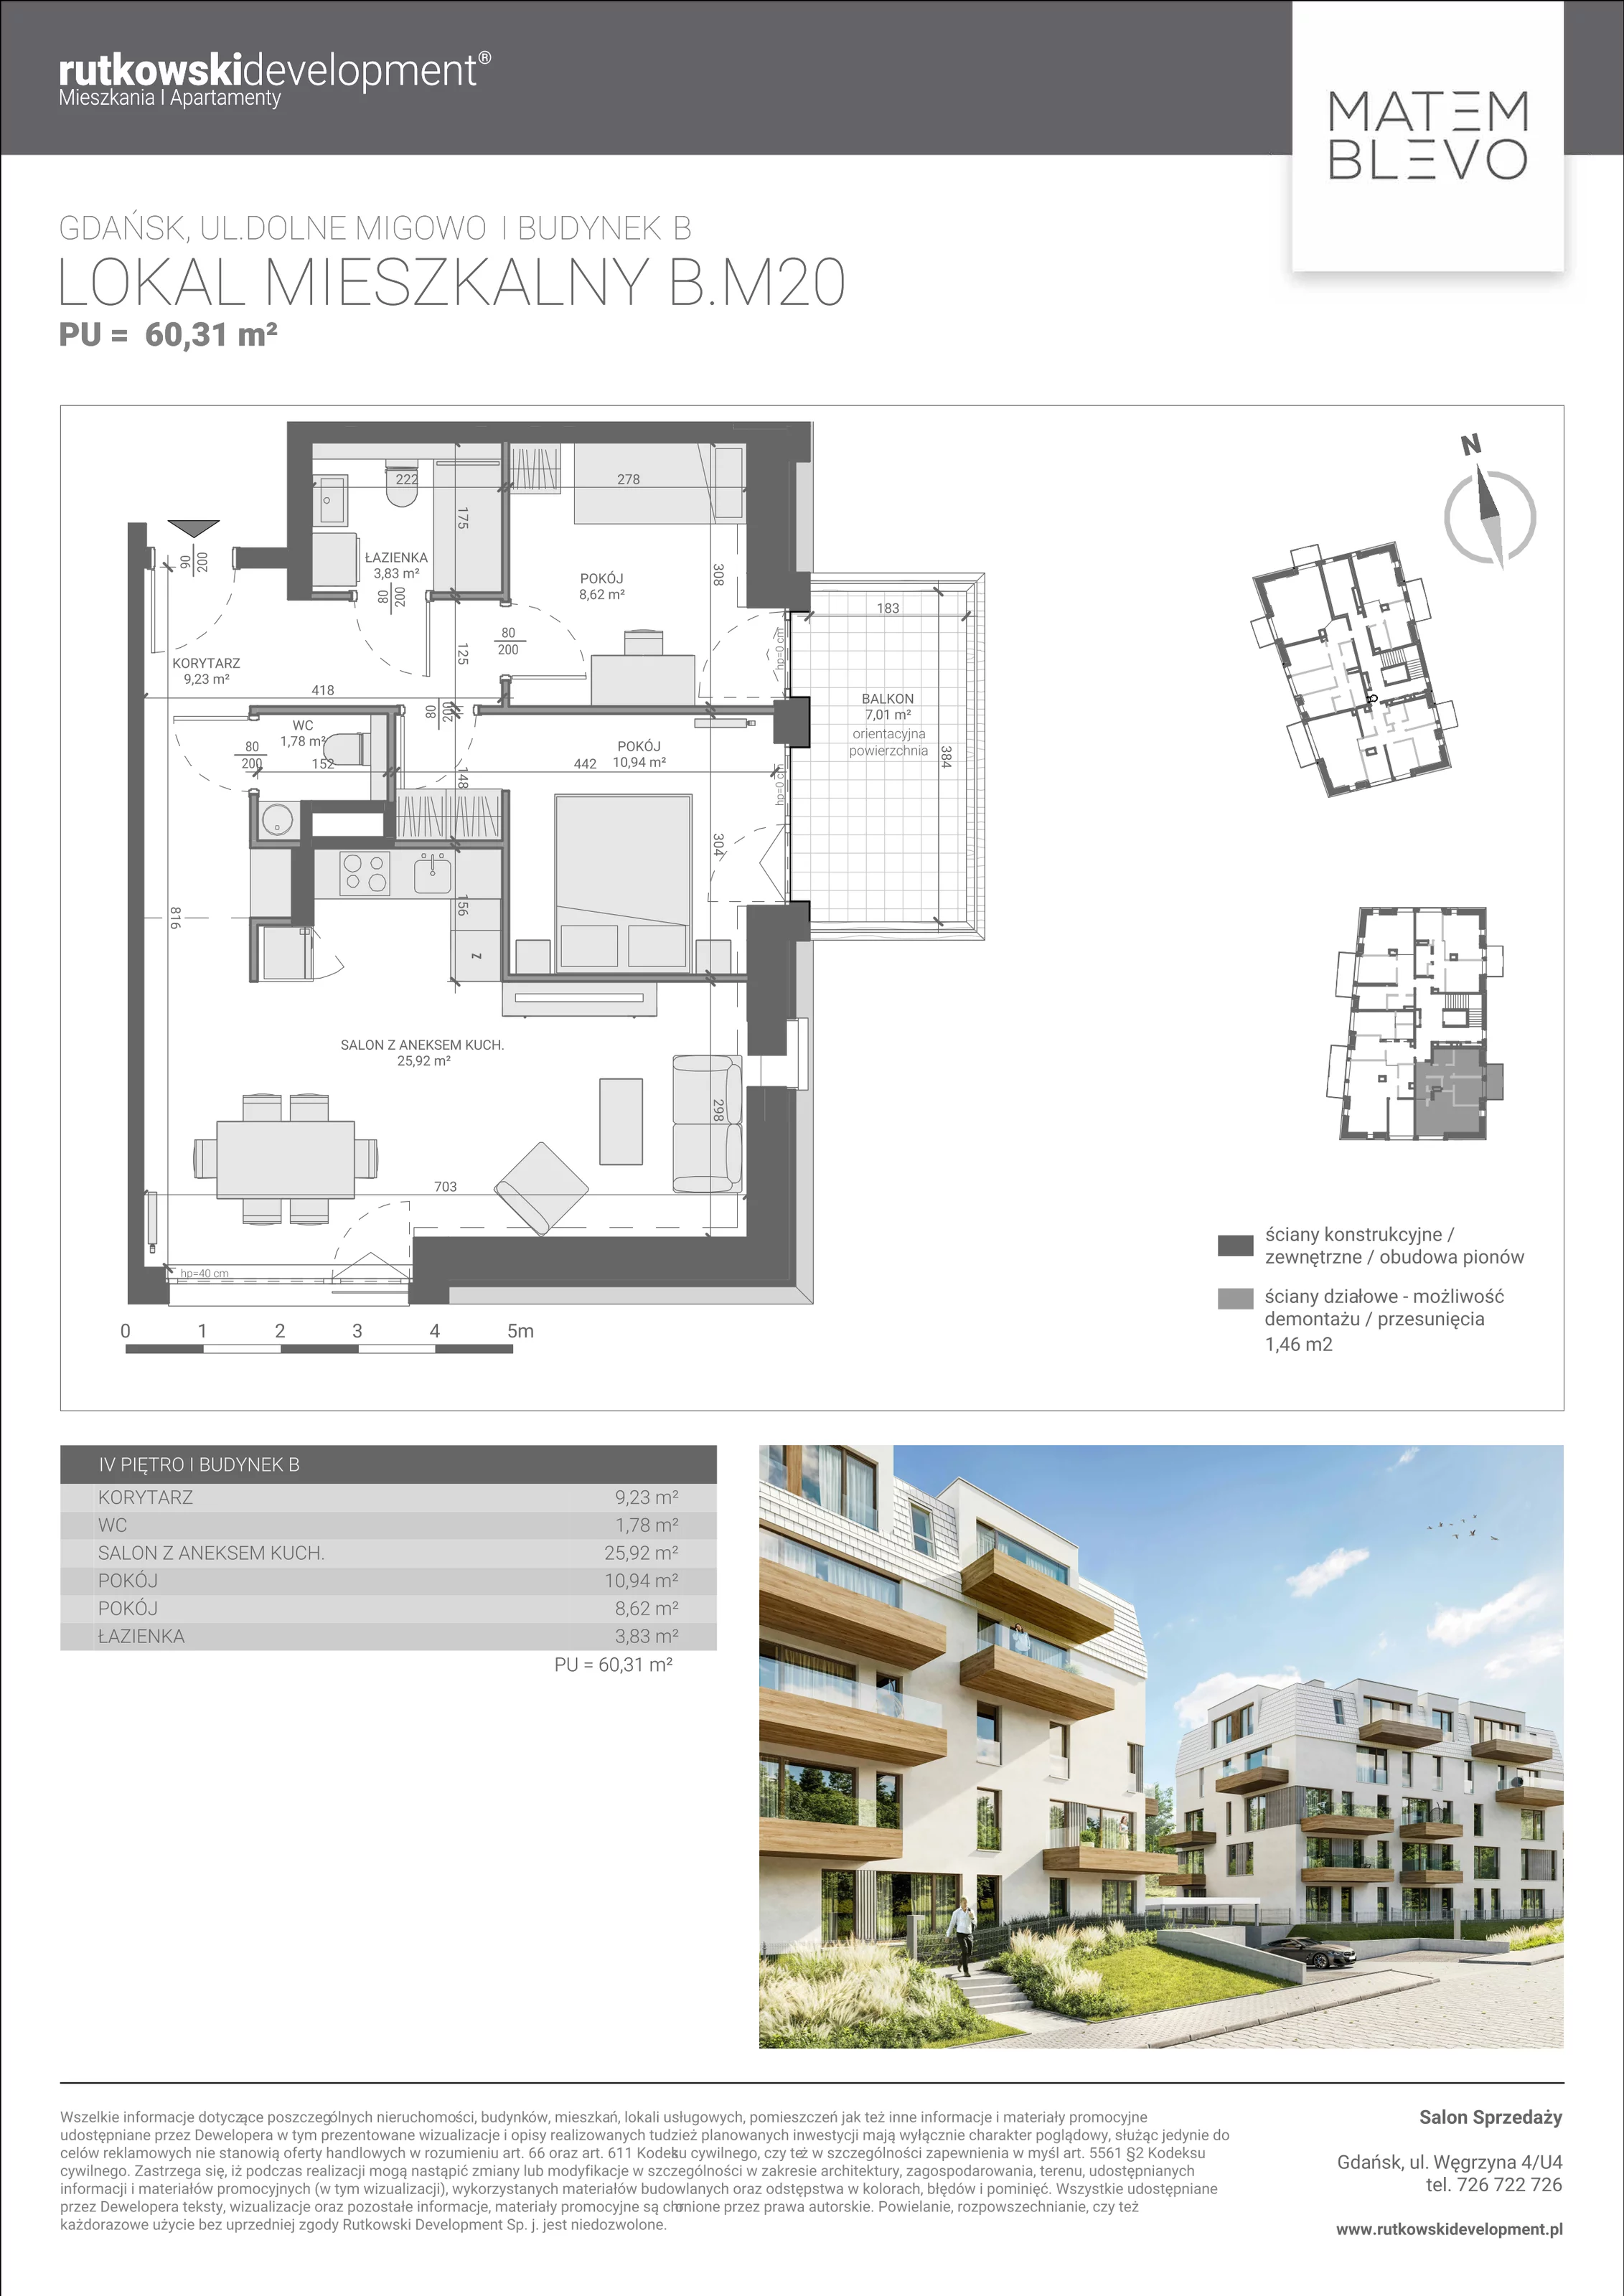 Mieszkanie 60,32 m², piętro 4, oferta nr B.M20, Matemblevo, Gdańsk, Brętowo, ul. Dolne Migowo 23 D